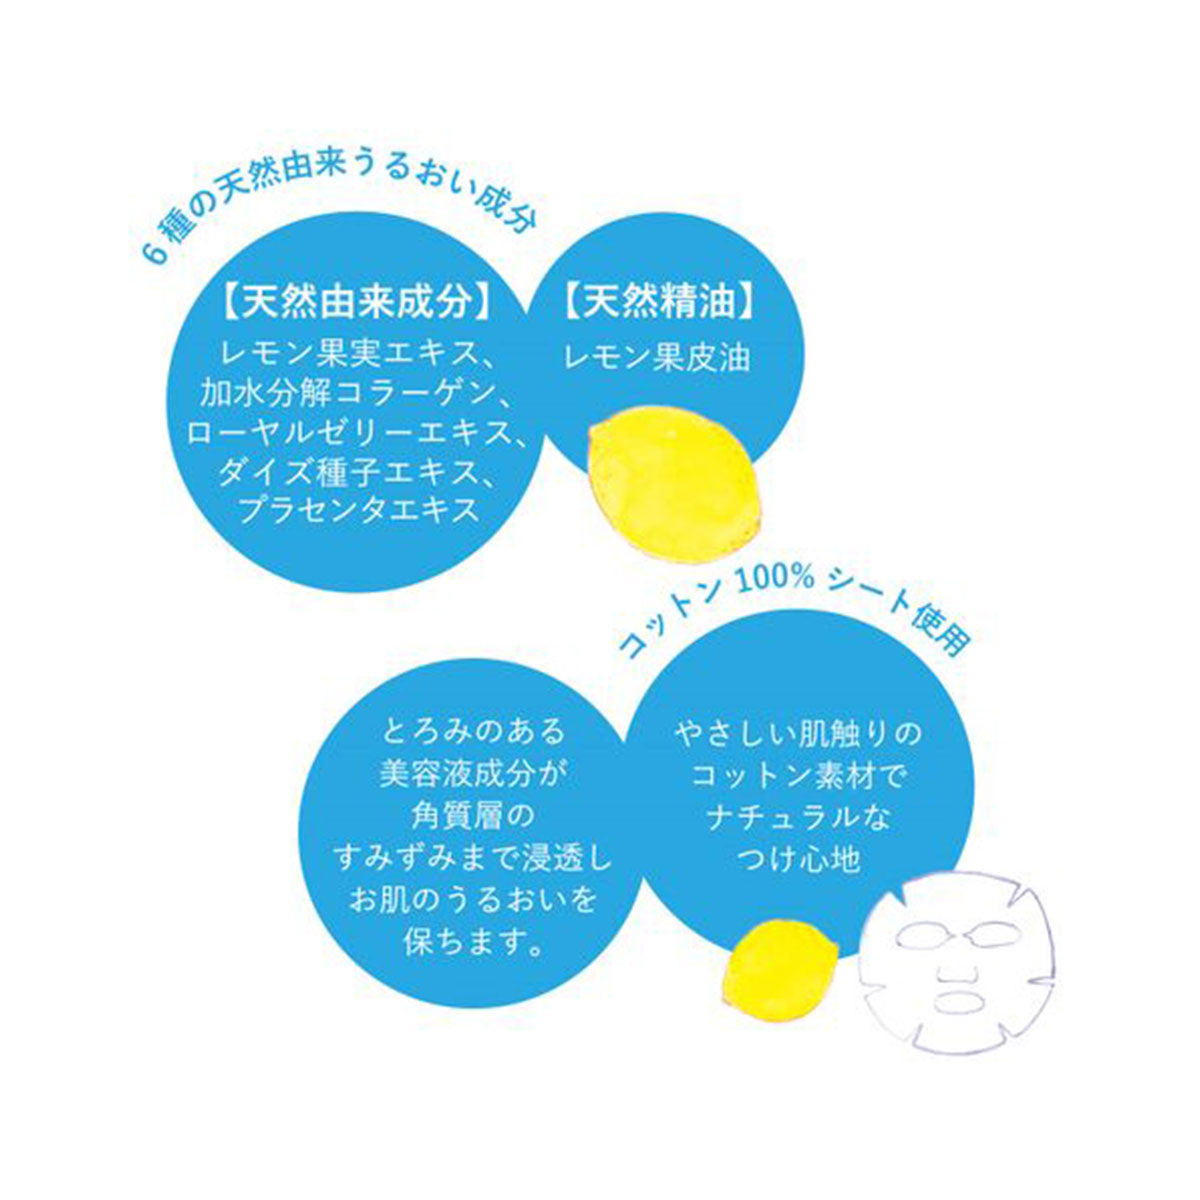 日本Charley幻想浴室芳香放松套装含面膜和浴盐 #柠檬香